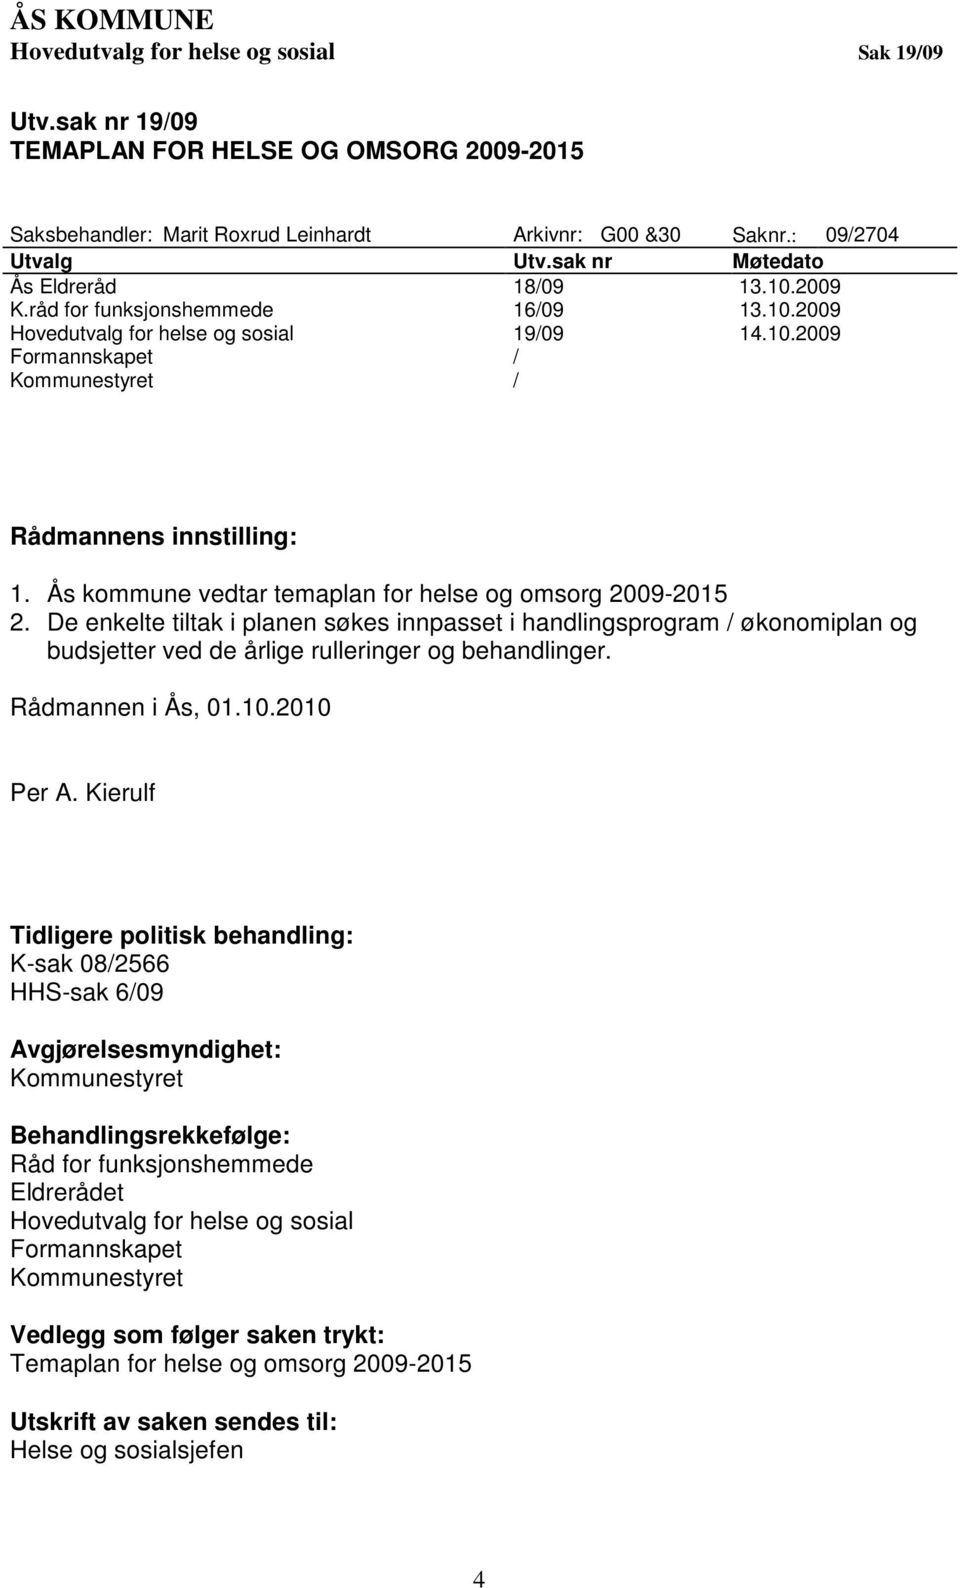 Ås kommune vedtar temaplan for helse og omsorg 2009-2015 2. De enkelte tiltak i planen søkes innpasset i handlingsprogram / økonomiplan og budsjetter ved de årlige rulleringer og behandlinger.